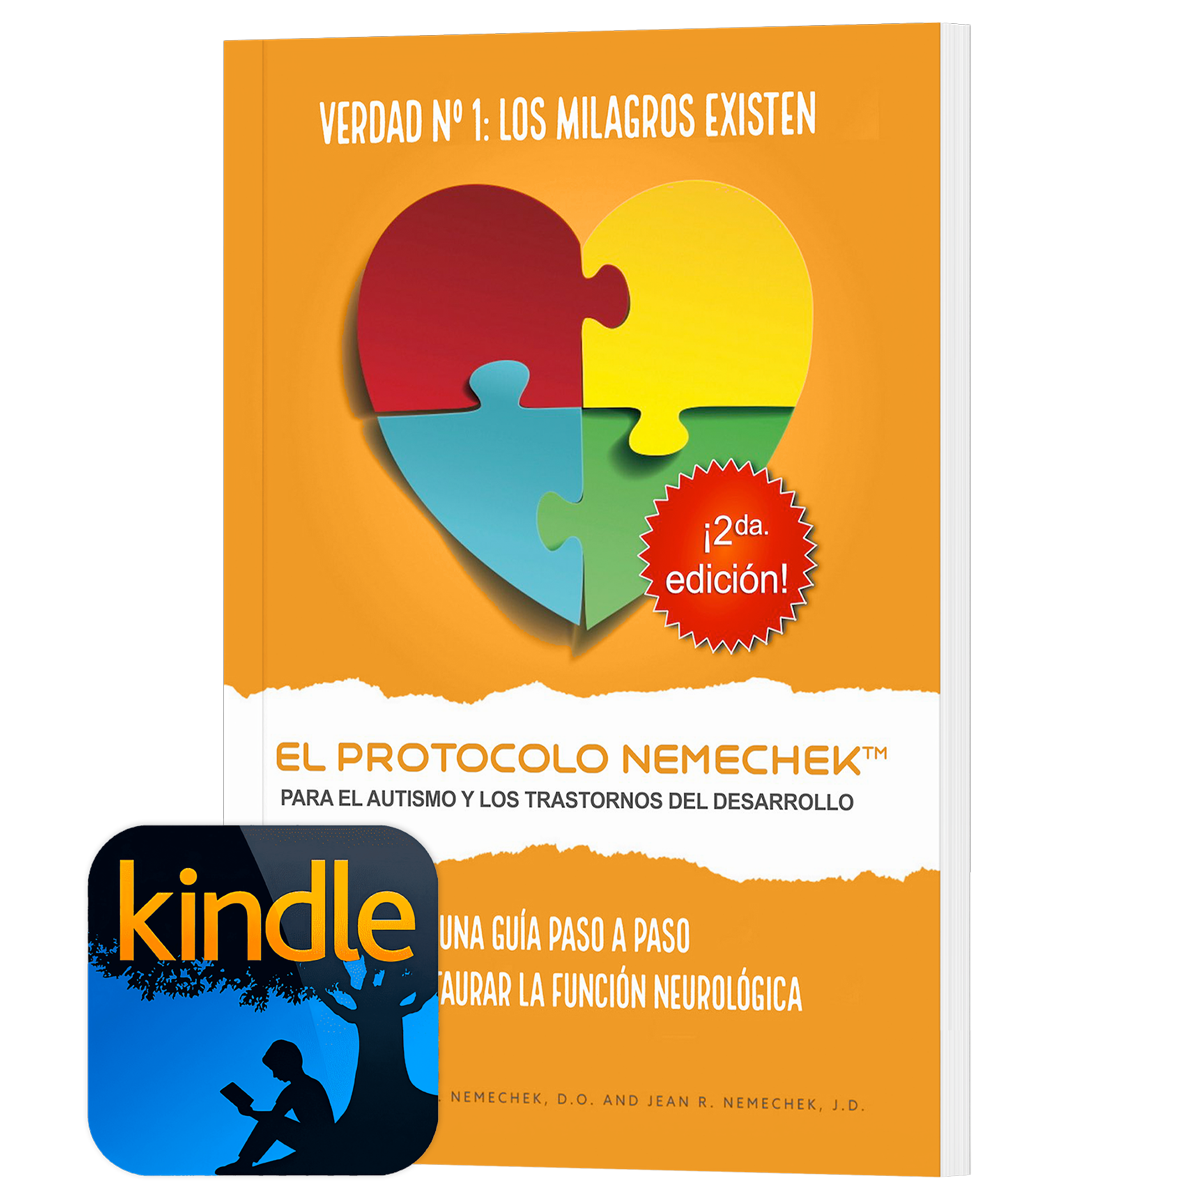 2da edición (Español, Kindle Reader) El Protocolo Nemechek™ Para Autismo y Trastornos del Desarrollo (Ahora está disponible en Amazon)